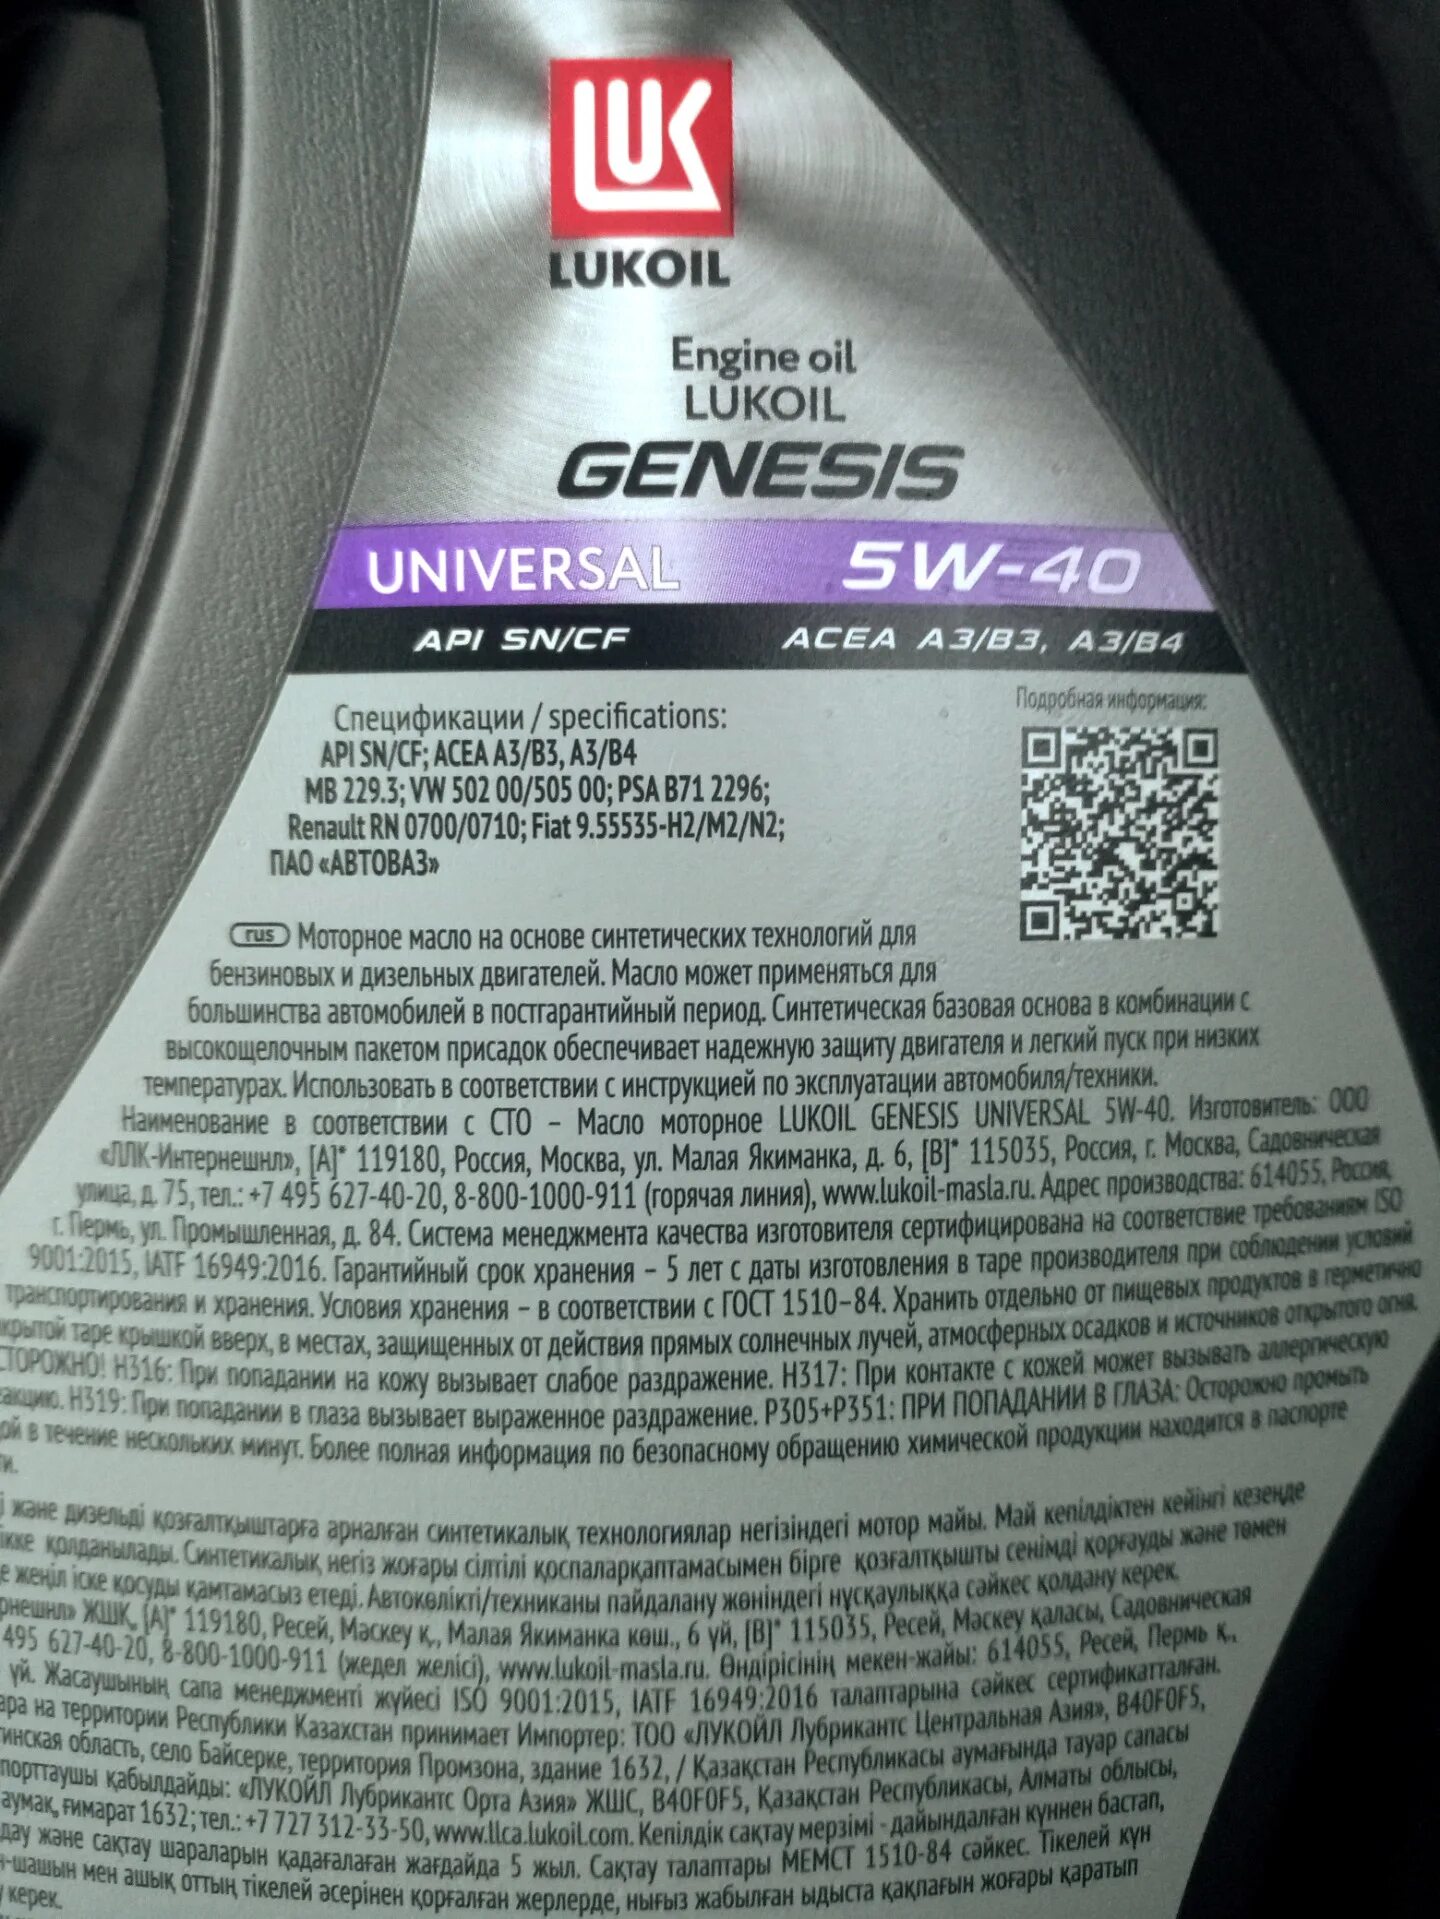 Лукойл Genesis Universal 5w40. Genesis Universal 5w-40. Lukoil Genesis Universal 5w-40. Лукойл масла Genesis Universal.